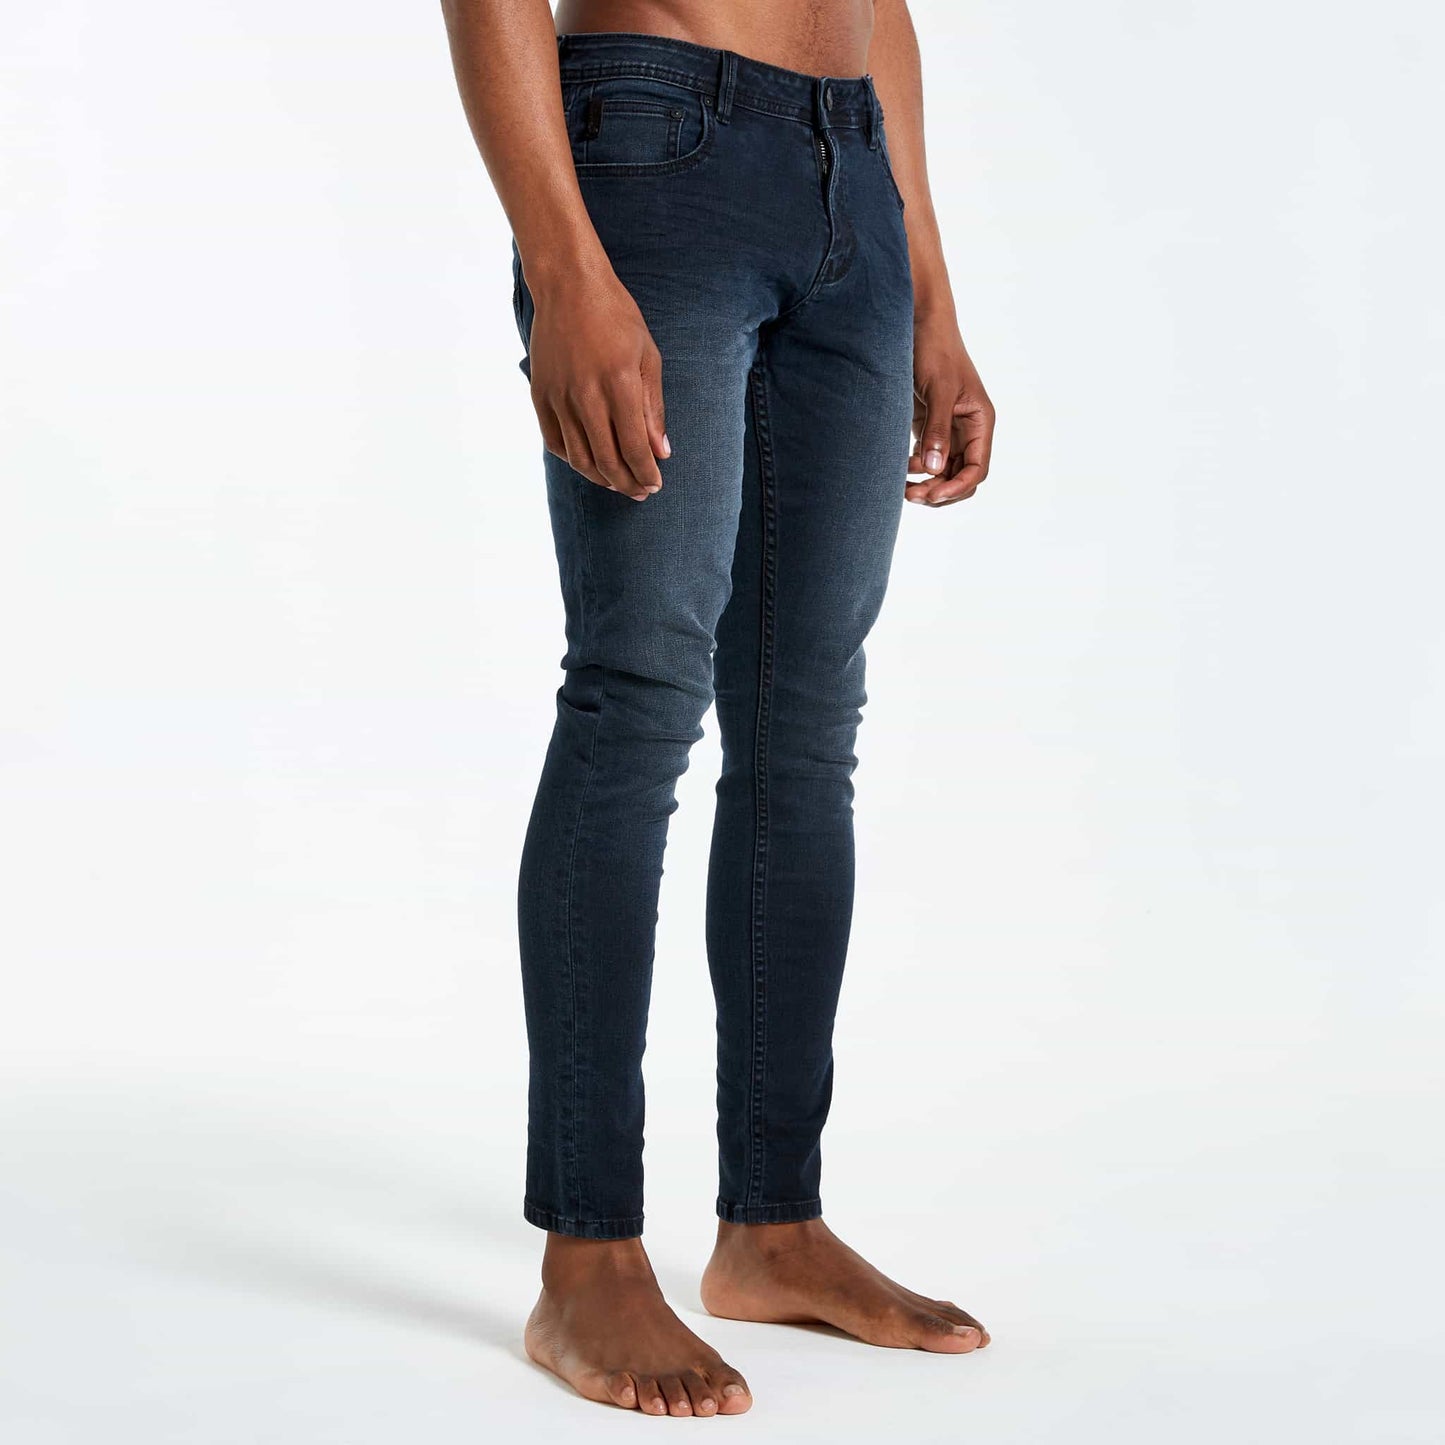 Basalt Jeans - Blue/Black